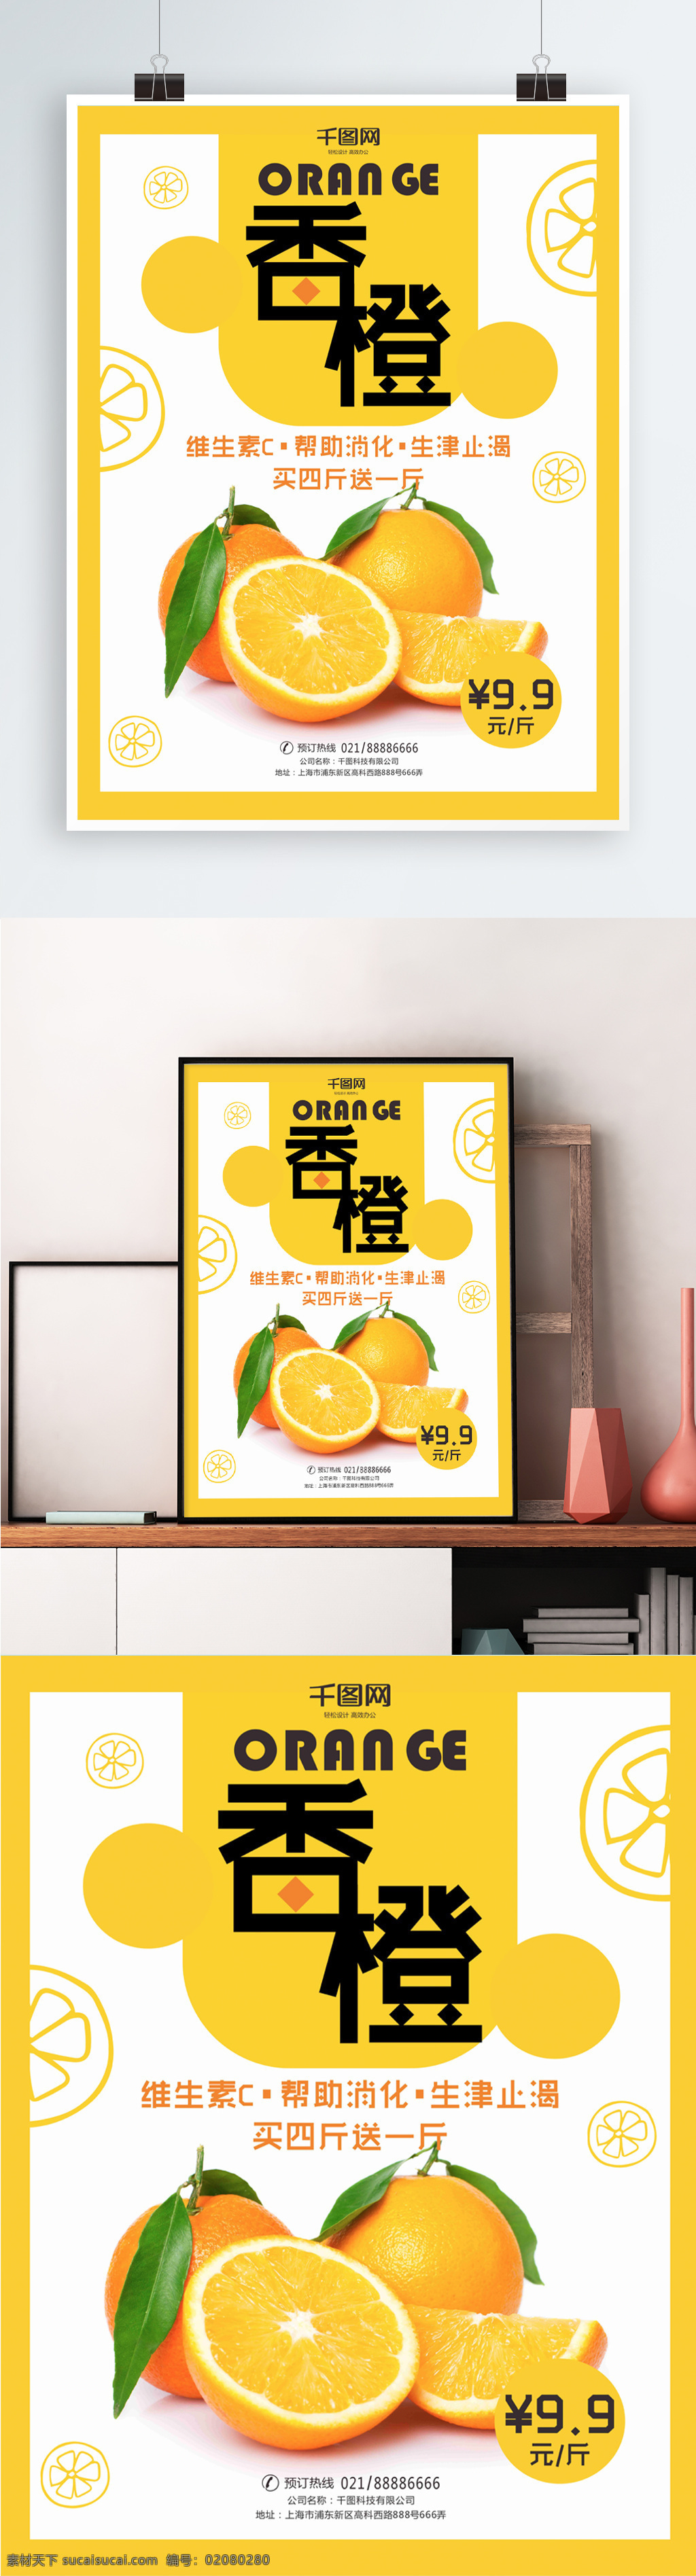 超市 清新 香橙 宣传海报 橙子 orange 橙色 简约